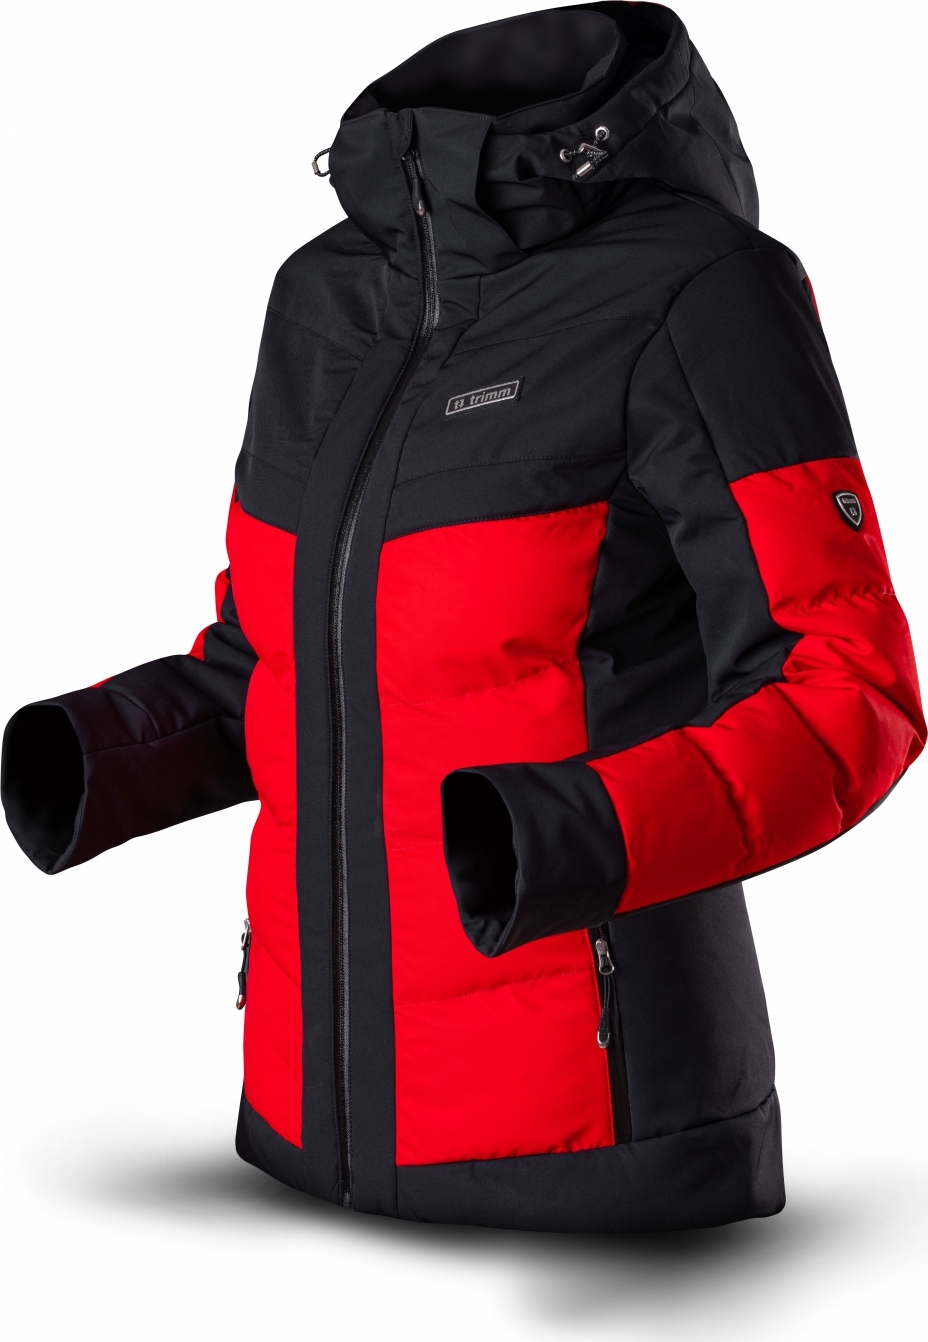 Dámská lyžařská bunda TRIMM Vario Lady červená/černá Velikost: L, Barva: red/ black